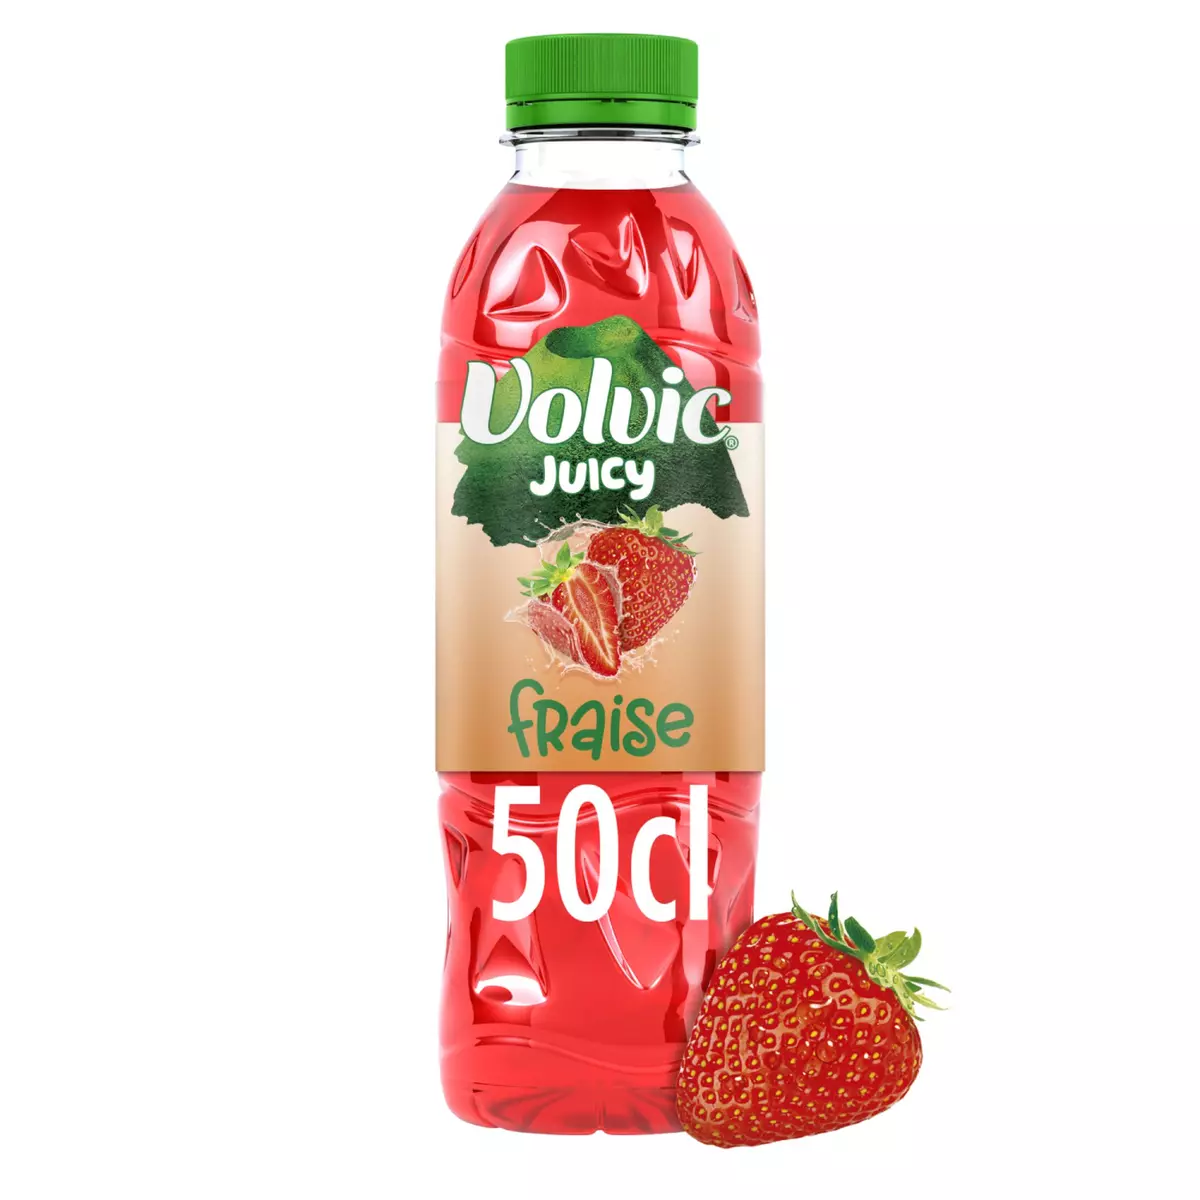 VOLVIC Boisson aromatisée juicy au jus de fraise 50cl